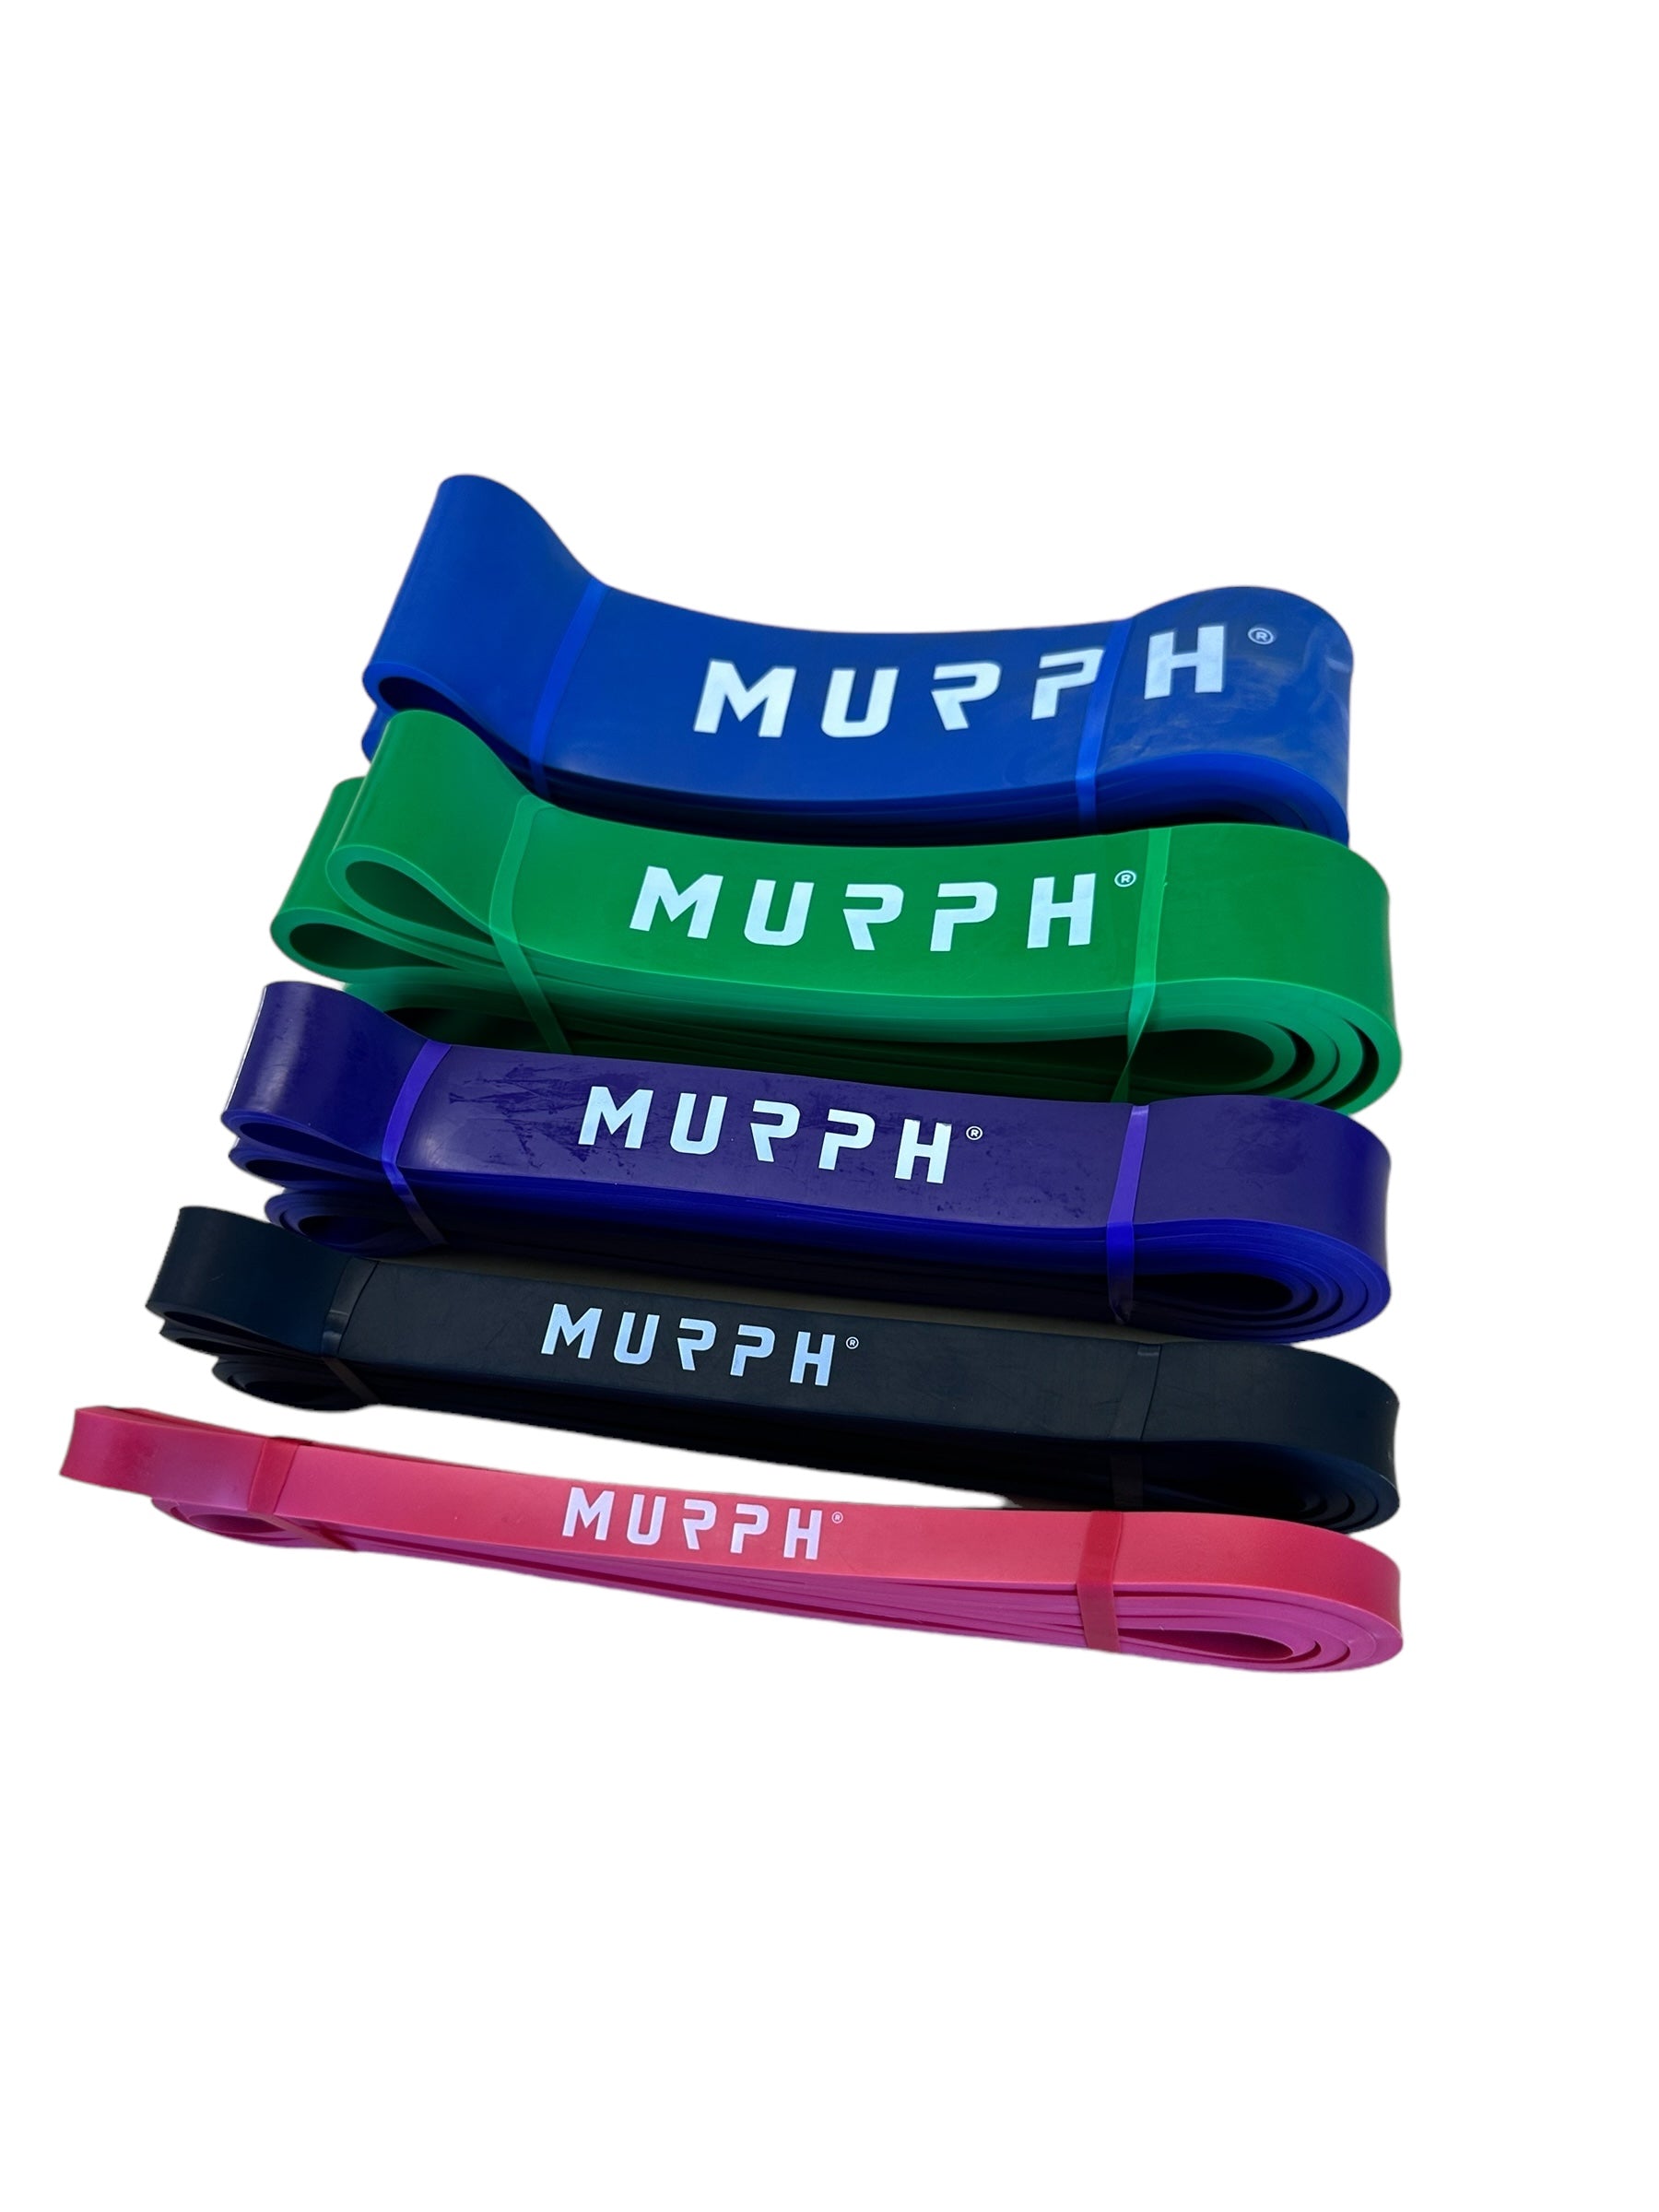 Rubber Bands Murph®